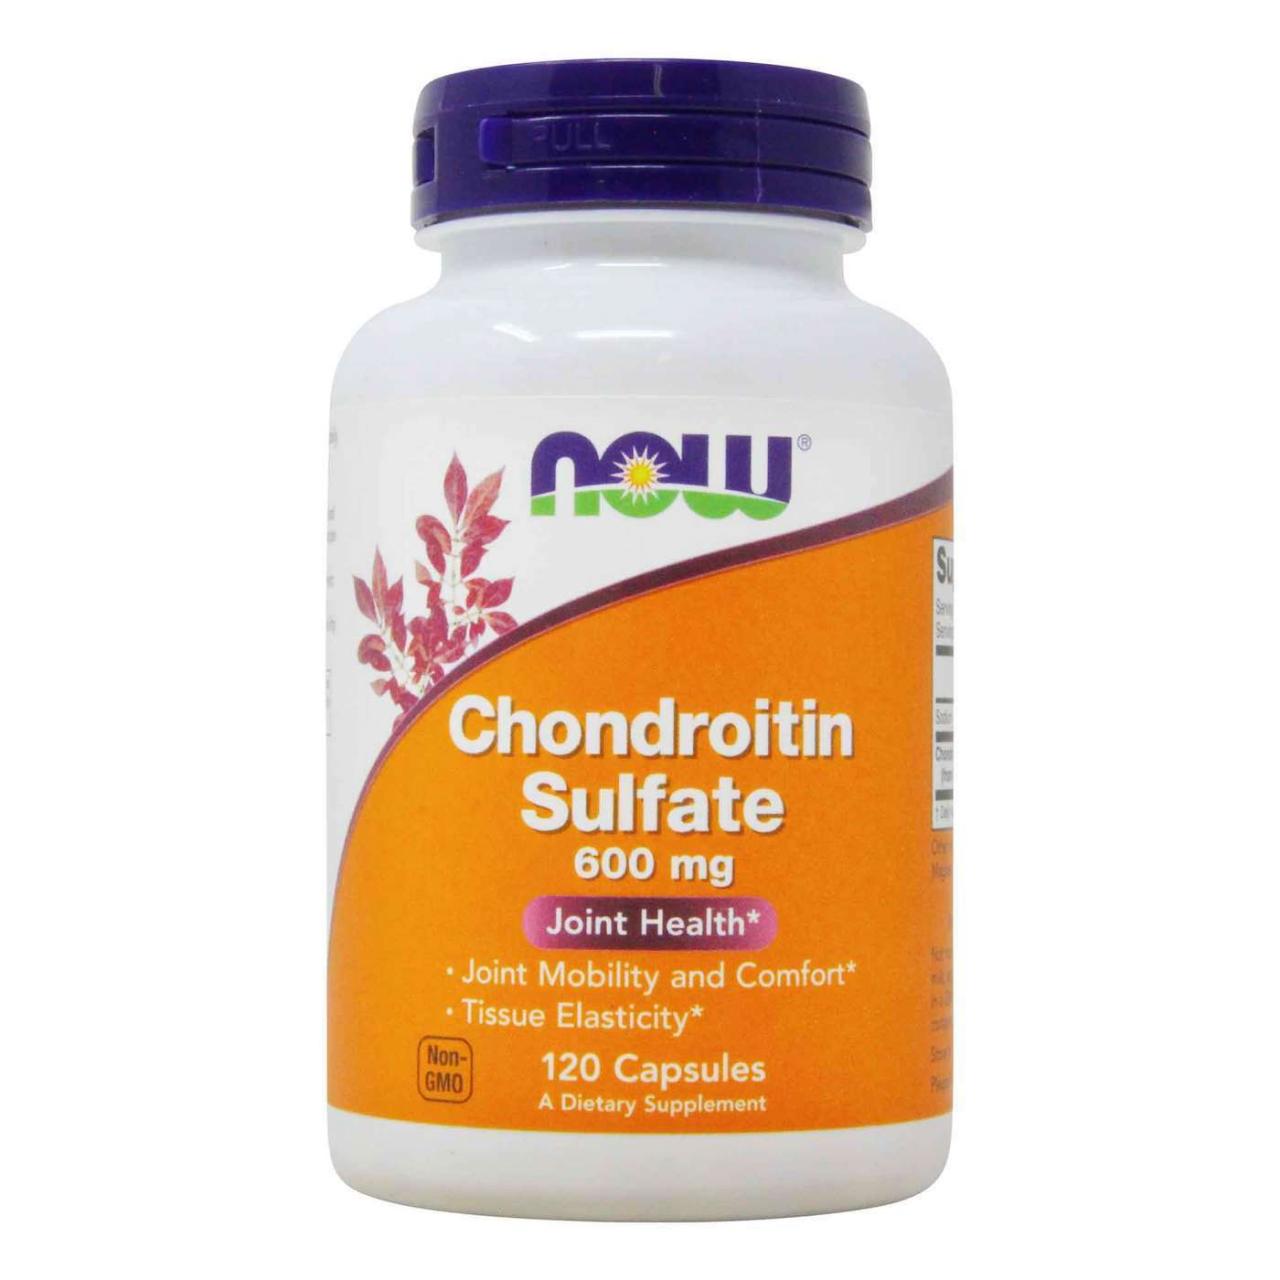 Chondroitin sulfate: Thần dược cho xương khớp hay chỉ là quảng cáo?